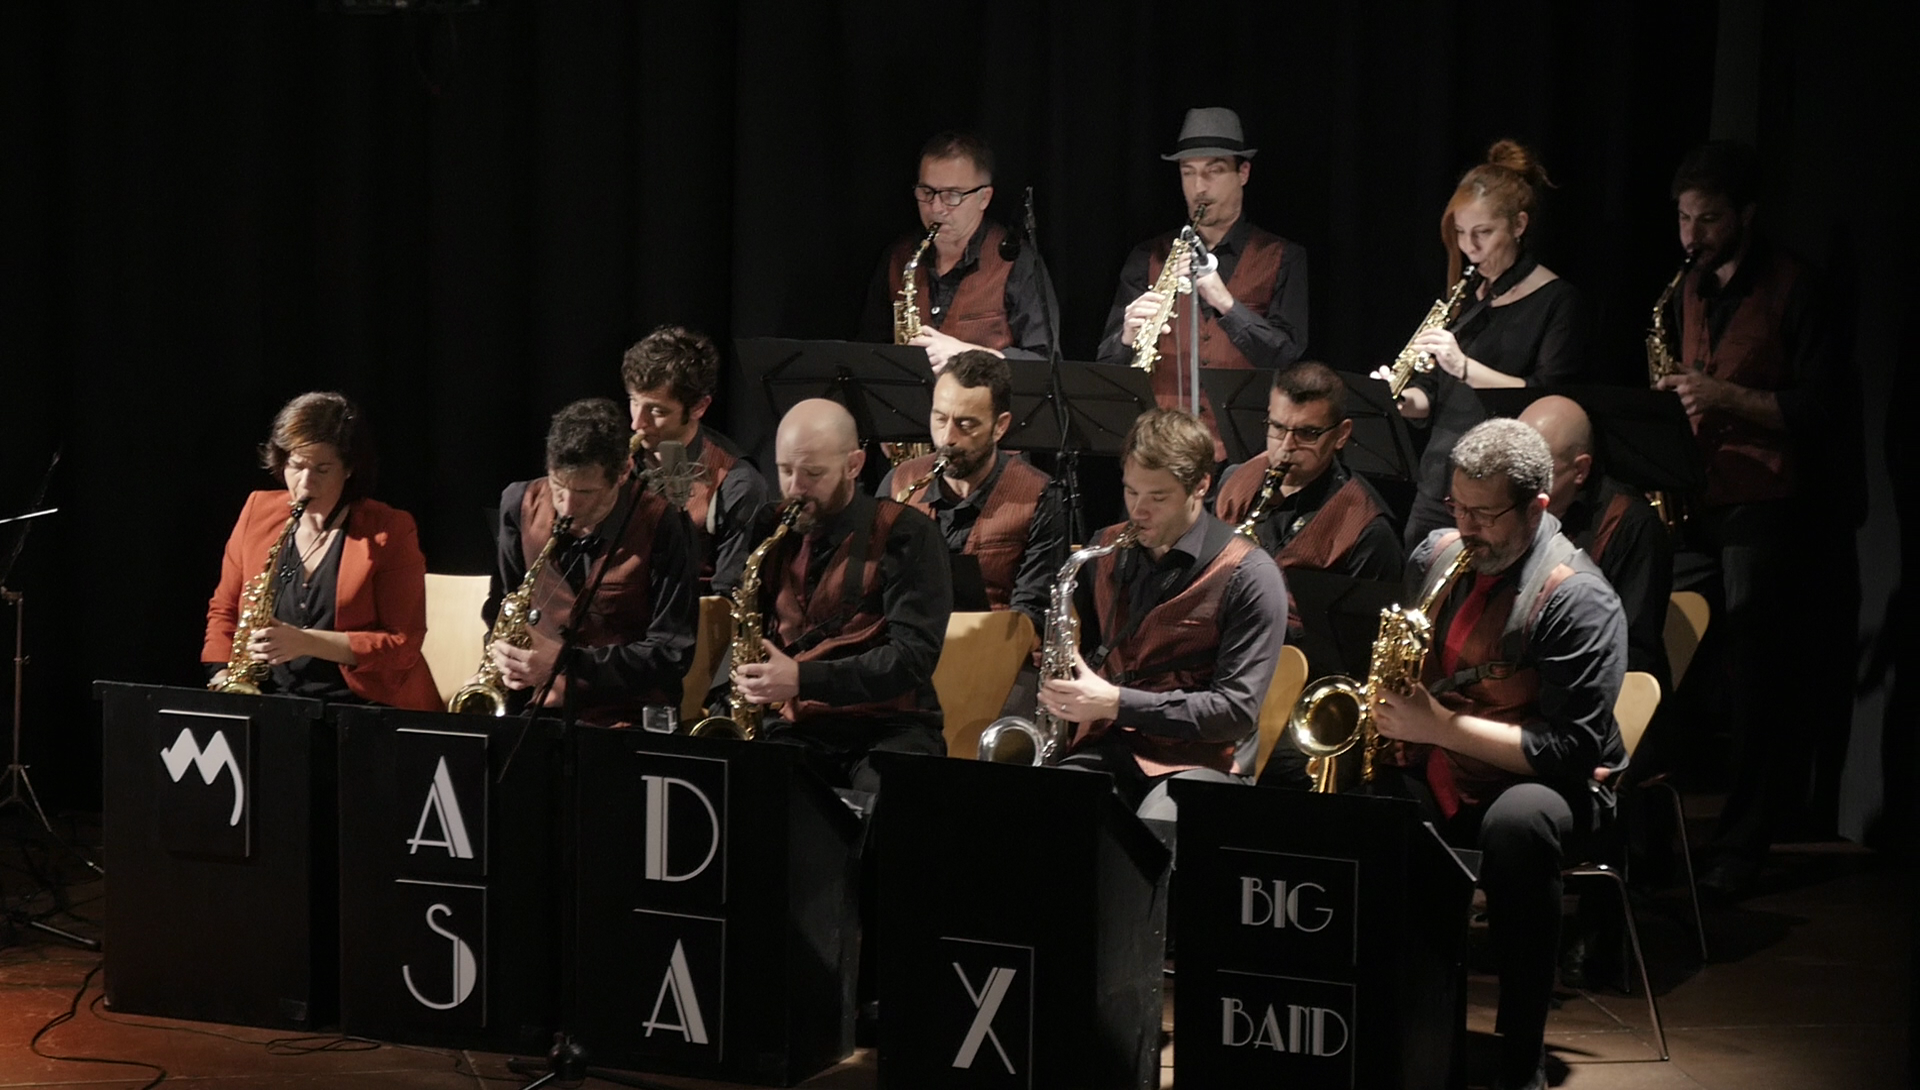 Mad Sax Big Band Vientos